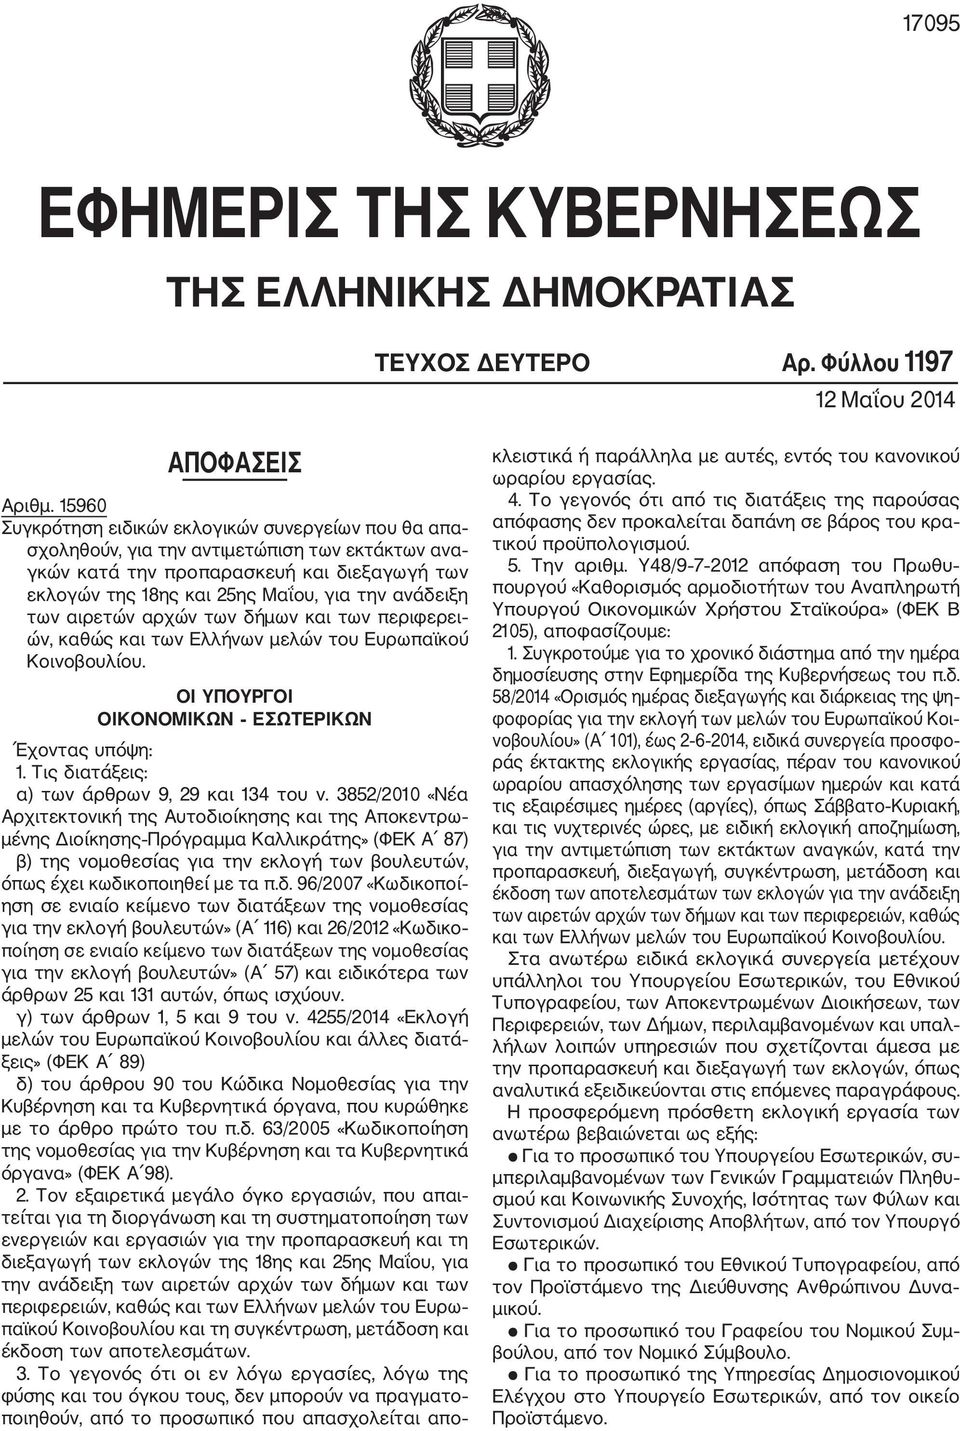 ανάδειξη των αιρετών αρχών των δήμων και των περιφερει ών, καθώς και των Ελλήνων μελών του Ευρωπαϊκού Κοινοβουλίου. ΟΙ ΥΠΟΥΡΓΟΙ ΟΙΚΟΝΟΜΙΚΩΝ ΕΣΩΤΕΡΙΚΩΝ Έχοντας υπόψη: 1.